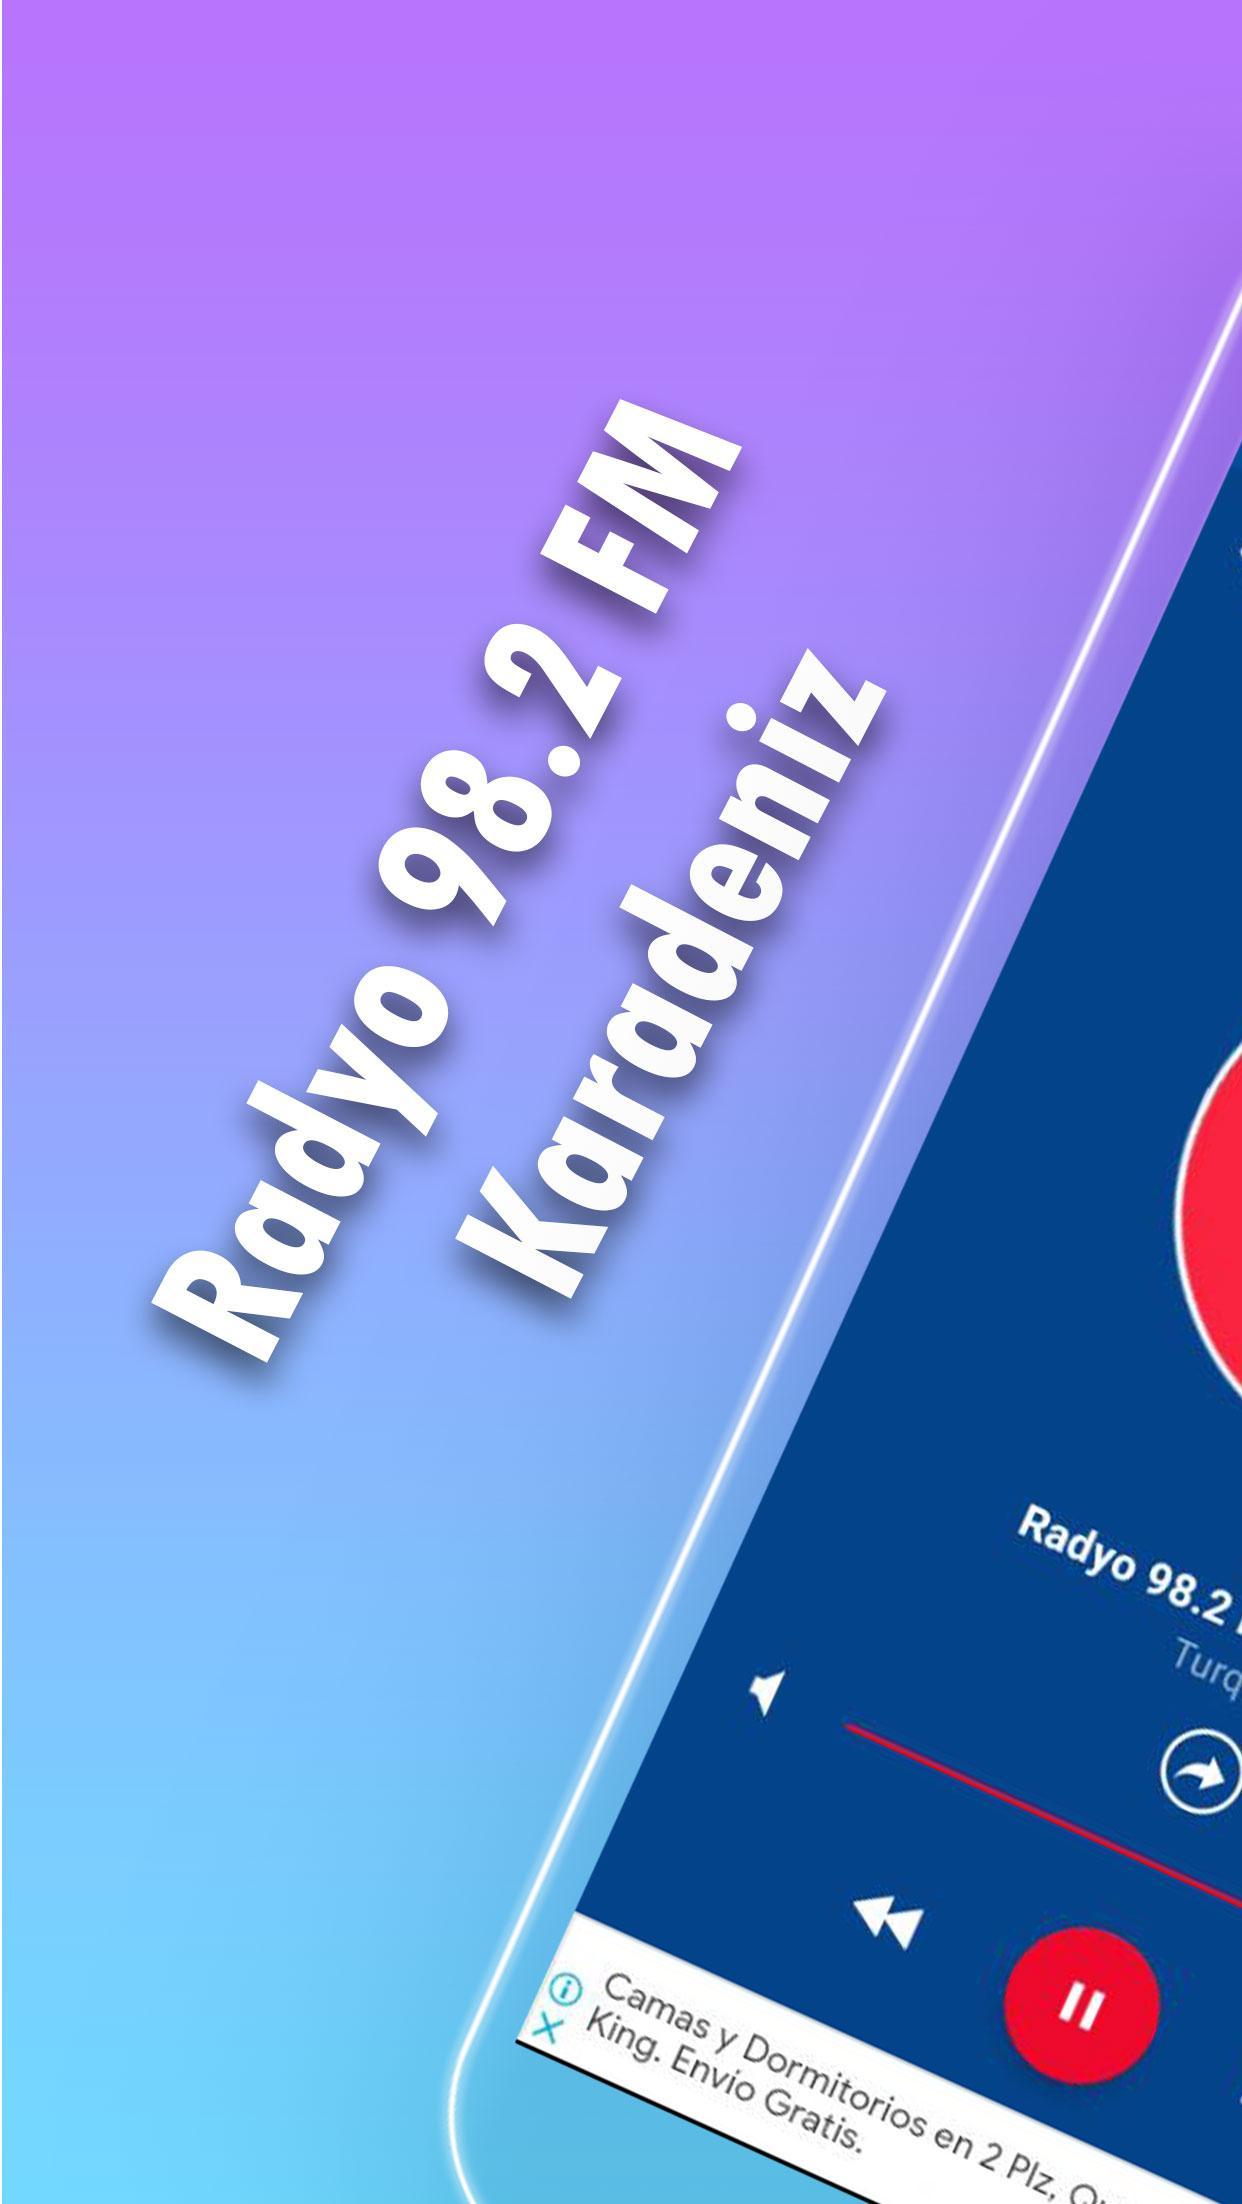 Android için radyo 98.2 fm karadeniz - APK'yı İndir